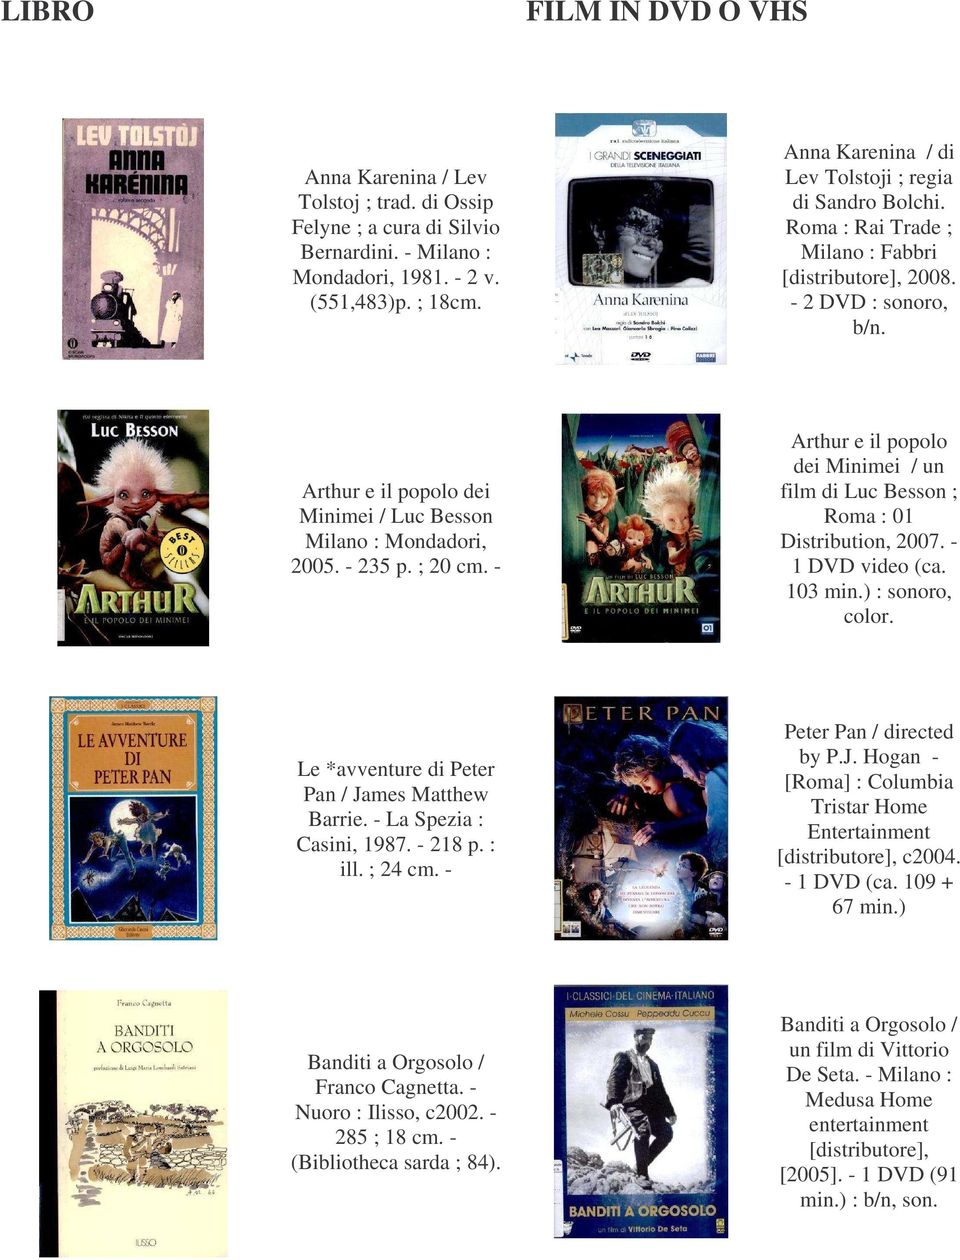 Arthur e il popolo dei Minimei / Luc Besson Milano : Mondadori, 2005. - 235 p. ; 20 cm. - Arthur e il popolo dei Minimei / un film di Luc Besson ; Roma : 01 Distribution, 2007. - 1 DVD video (ca.